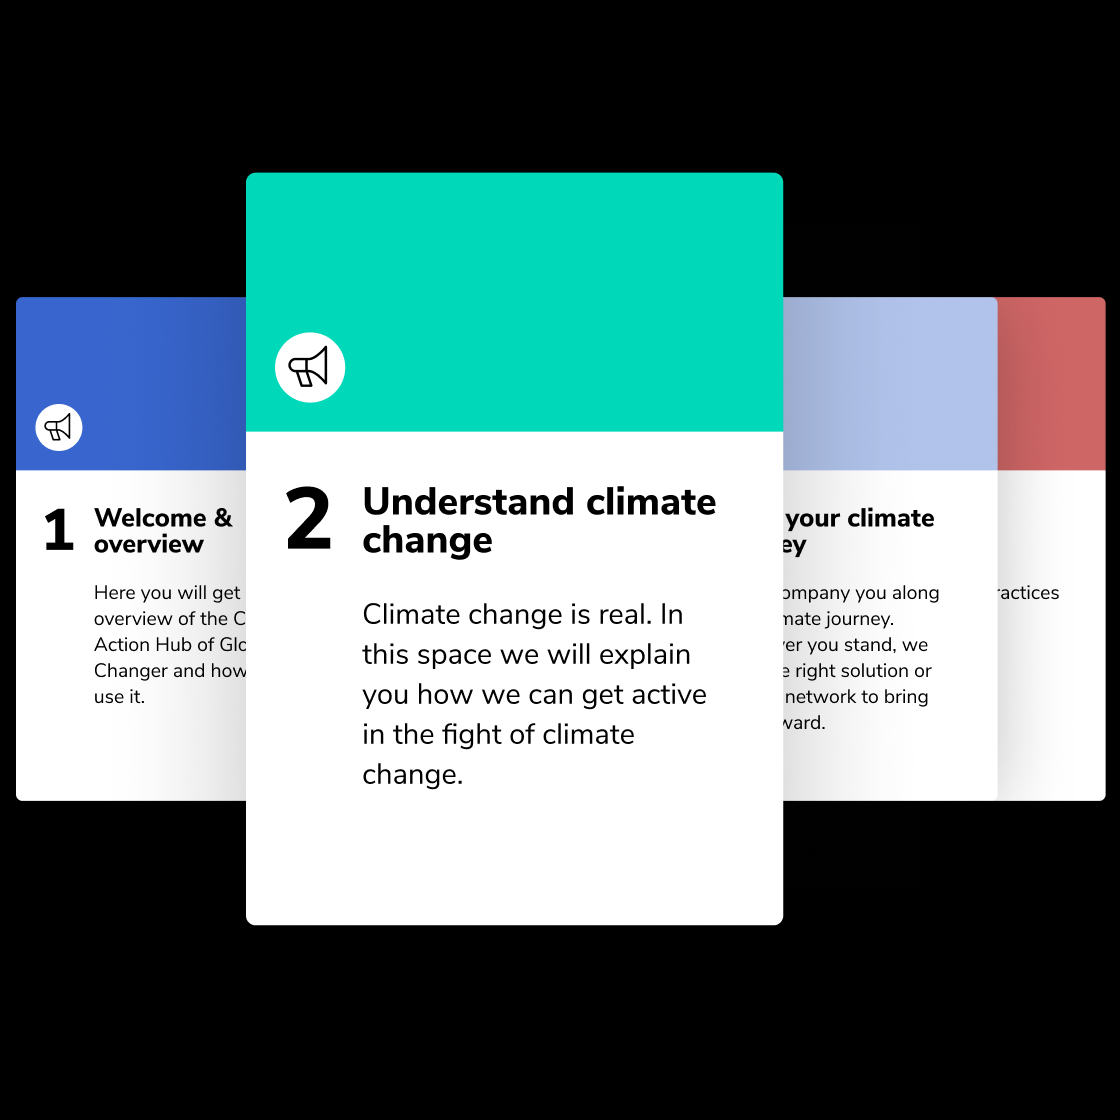 Global Changer vermittelt über das Lernportal Climate Action Hub alle wichtige Themen um die Klimakrise zu verstehen.